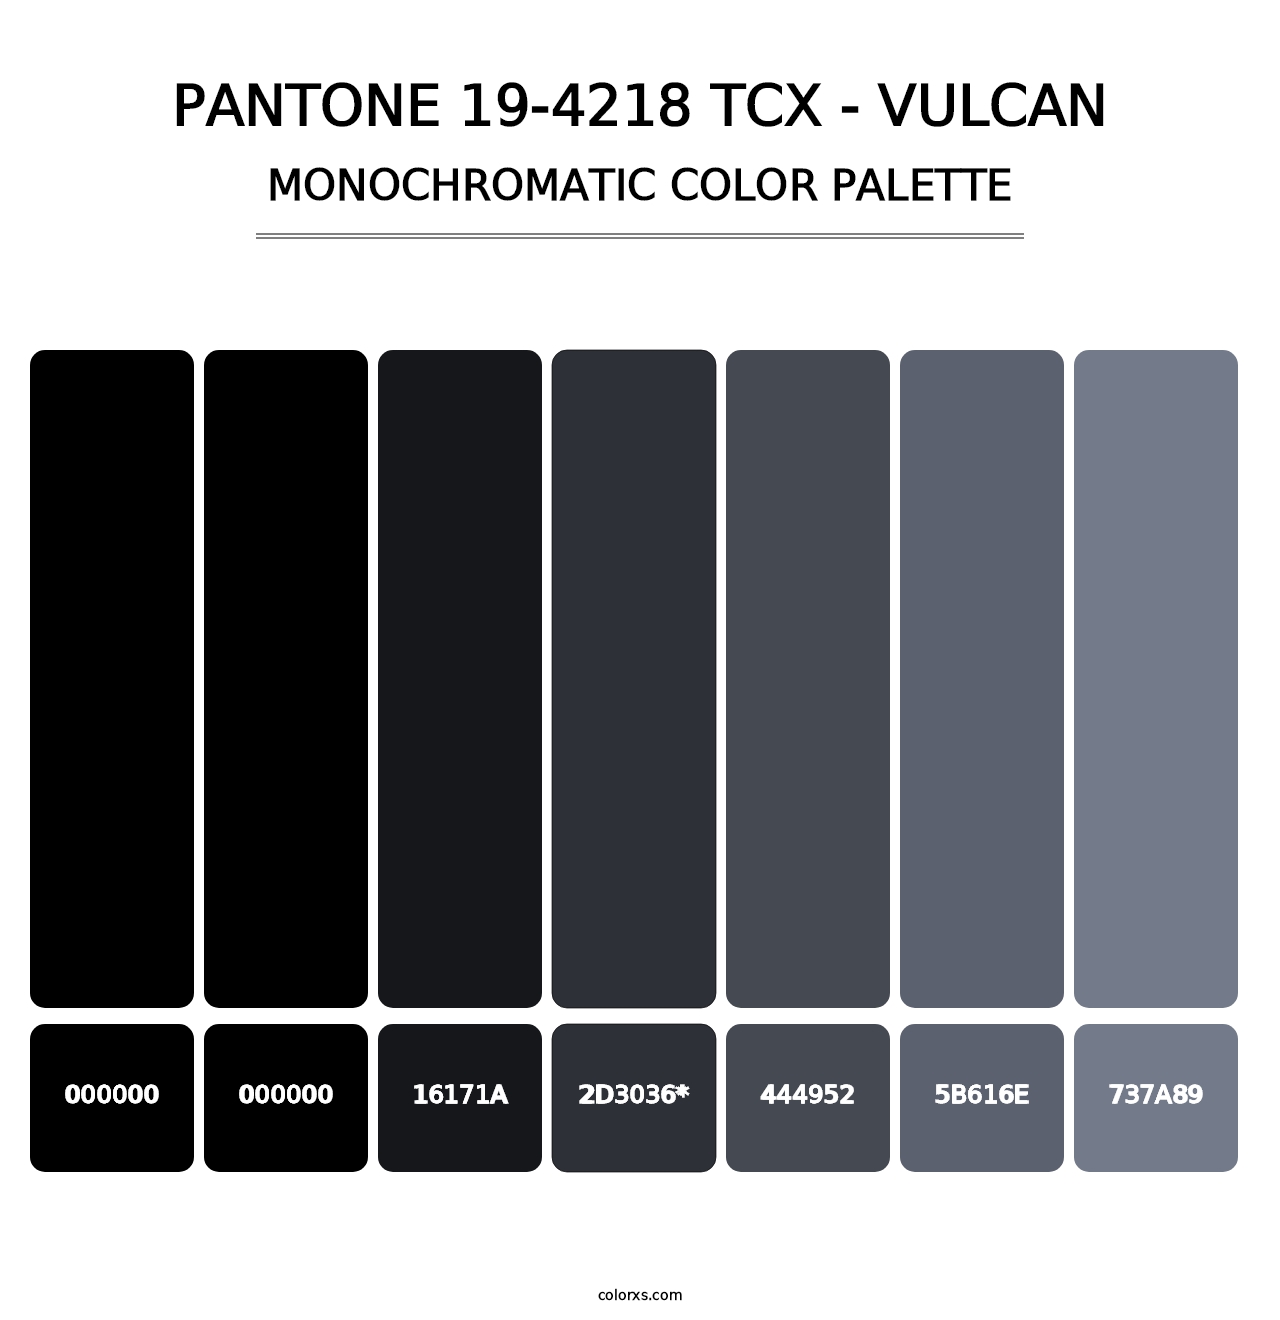 PANTONE 19-4218 TCX - Vulcan - Monochromatic Color Palette